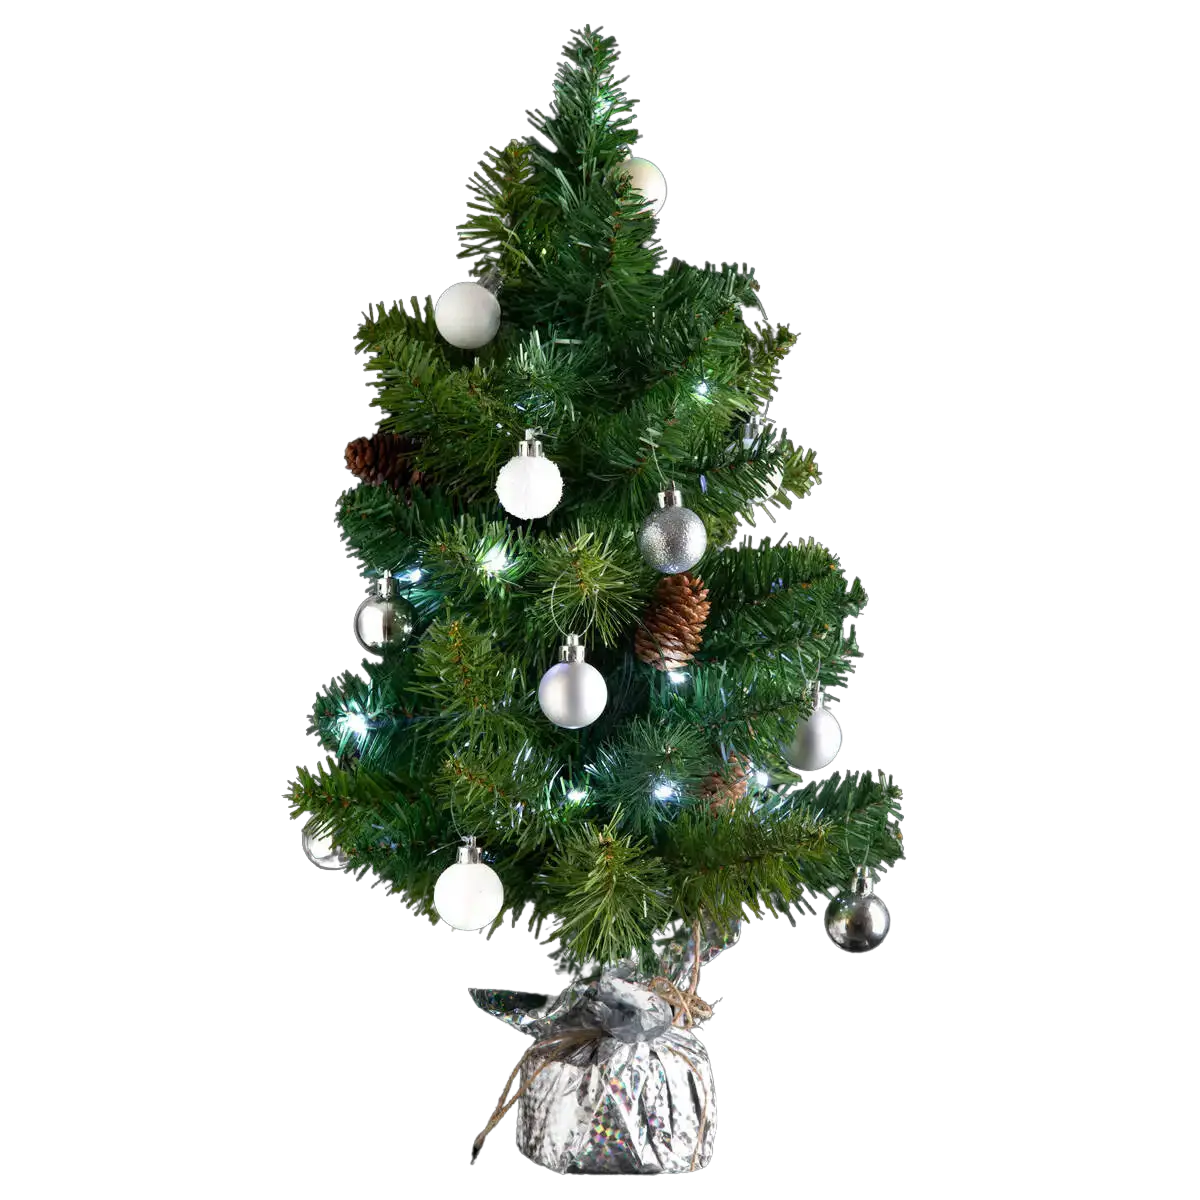 K眉nstlicher Weihnachtsbaum LED